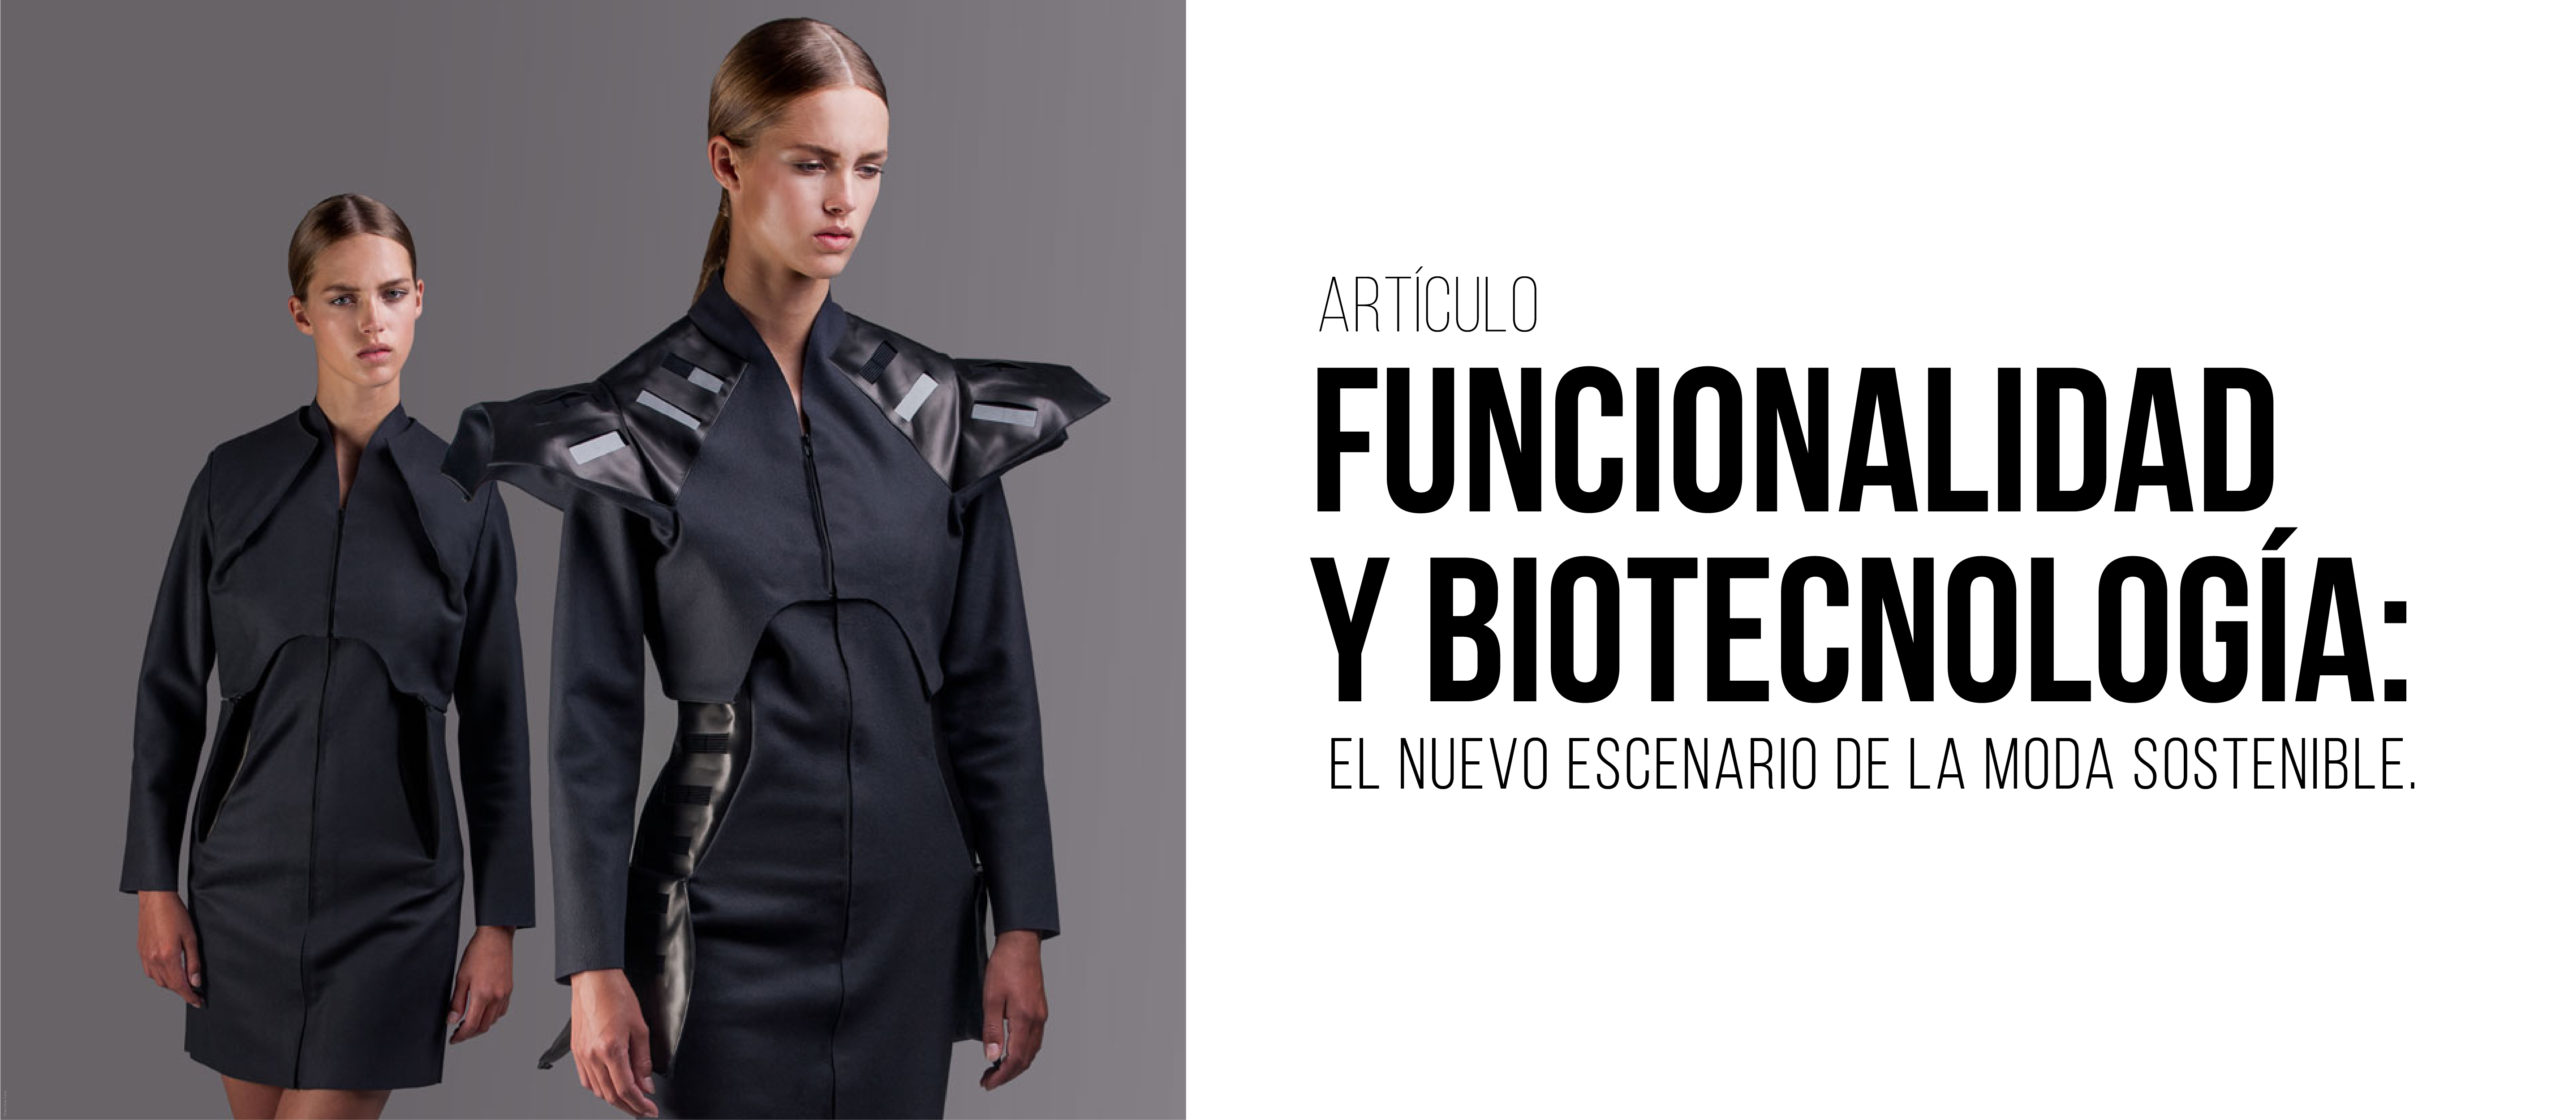 Funcionalidad y biotecnología: el nuevo escenario de la moda sostenible